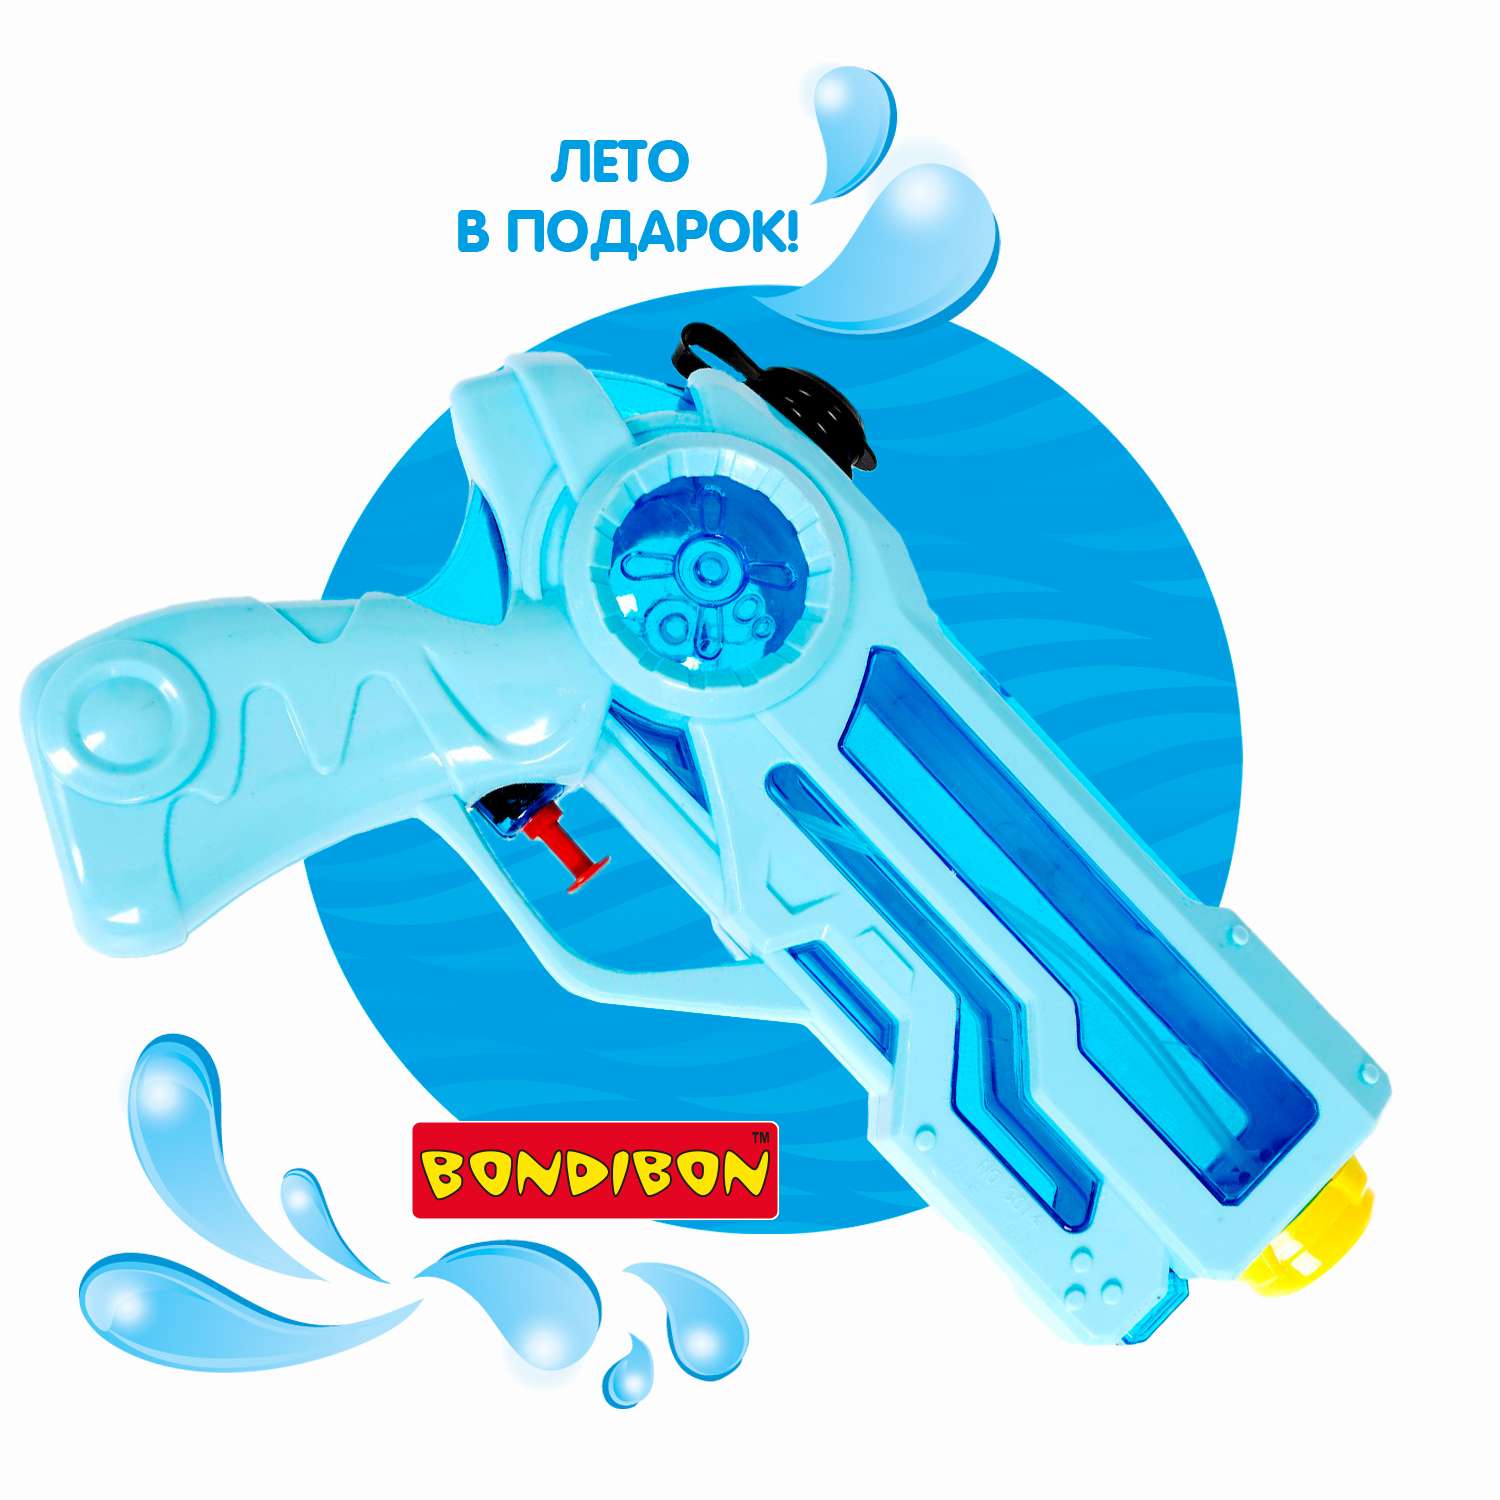 Водный пистолет BONDIBON голубой с синим прозрачным резервуаром серия Наше Лето - фото 12